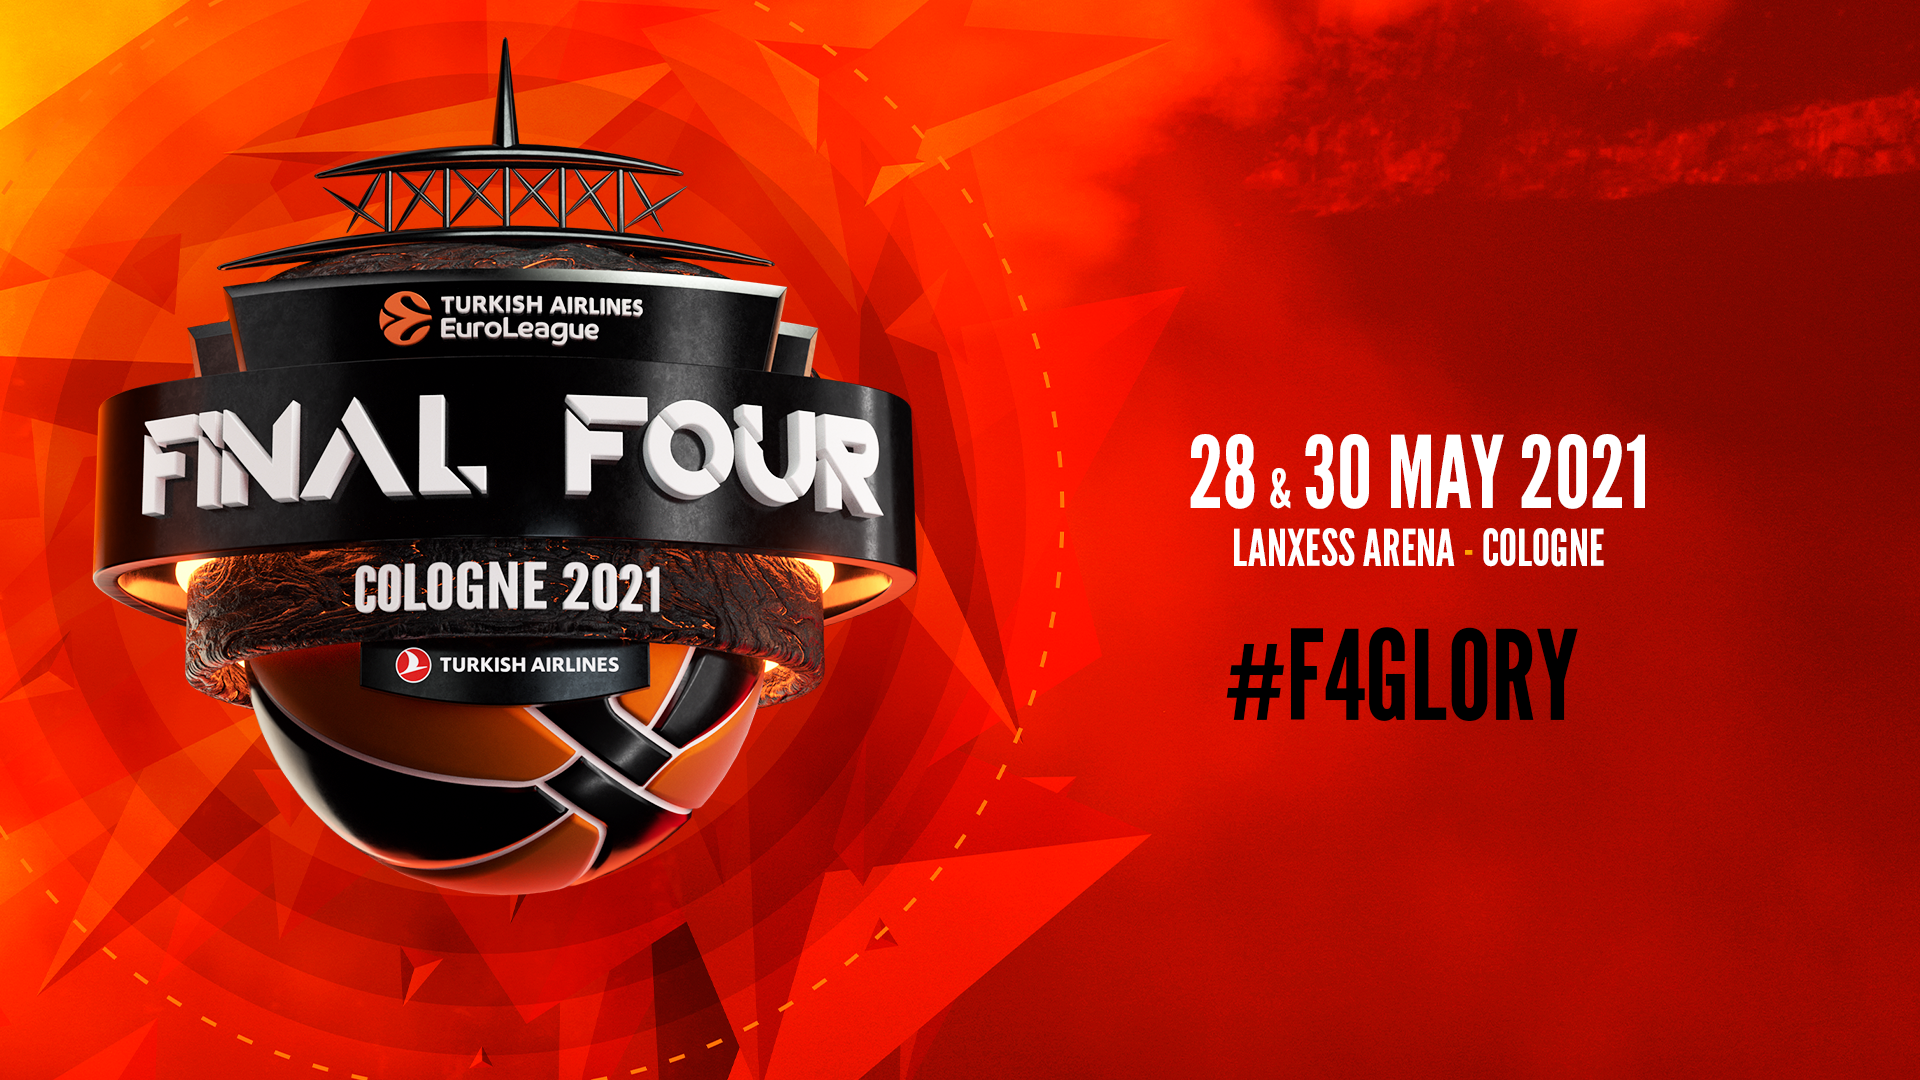 Кельн принимает главные матчи сезона. Большое превью F4Glory | Euroleague 2020-21